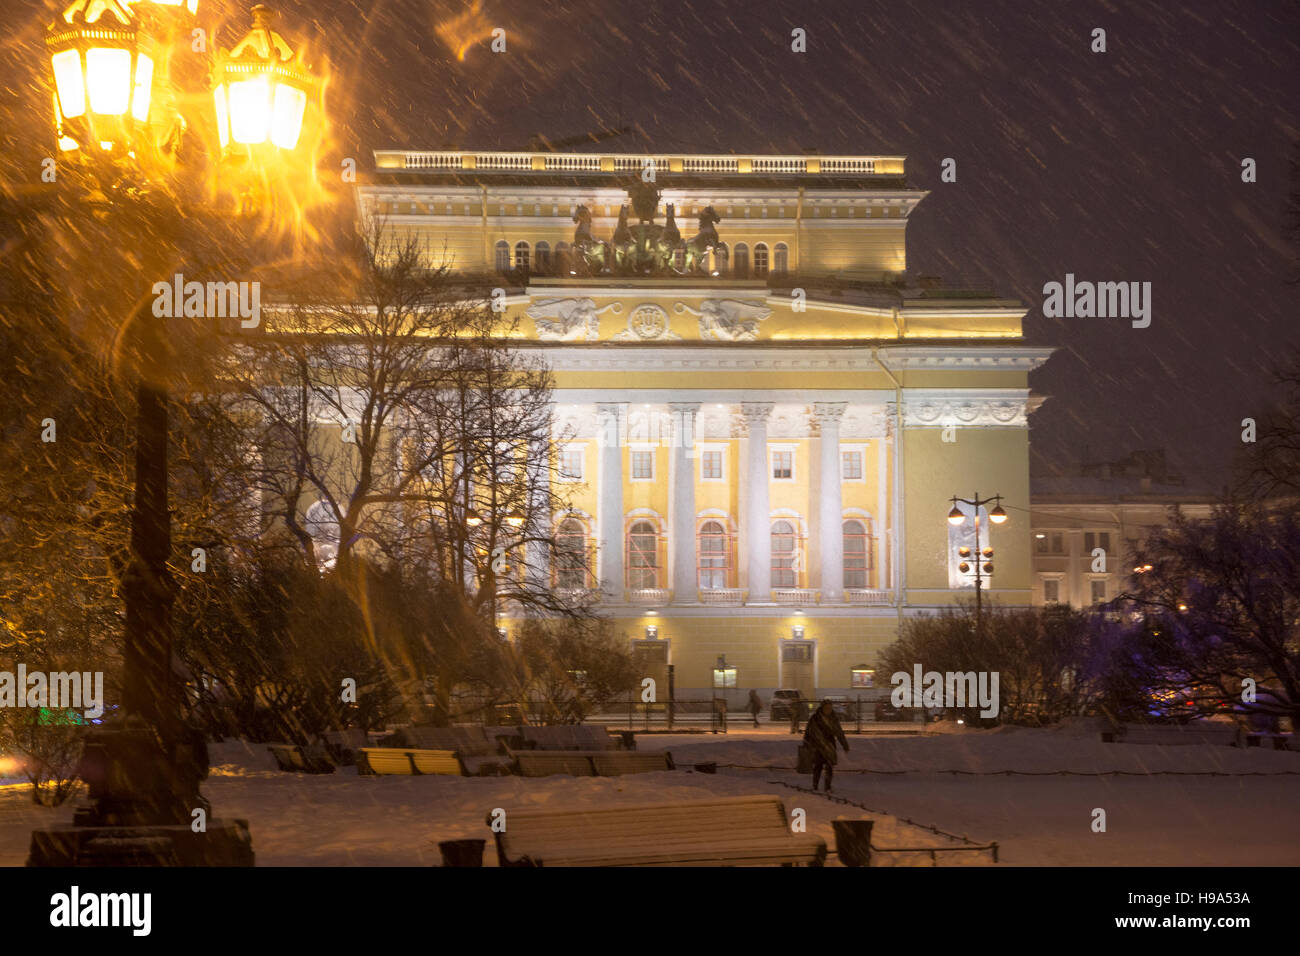 Vue de la façade à l'théâtre Alexandrinsky Ostrovsky square la nuit à Saint Petersburg, Russie Banque D'Images